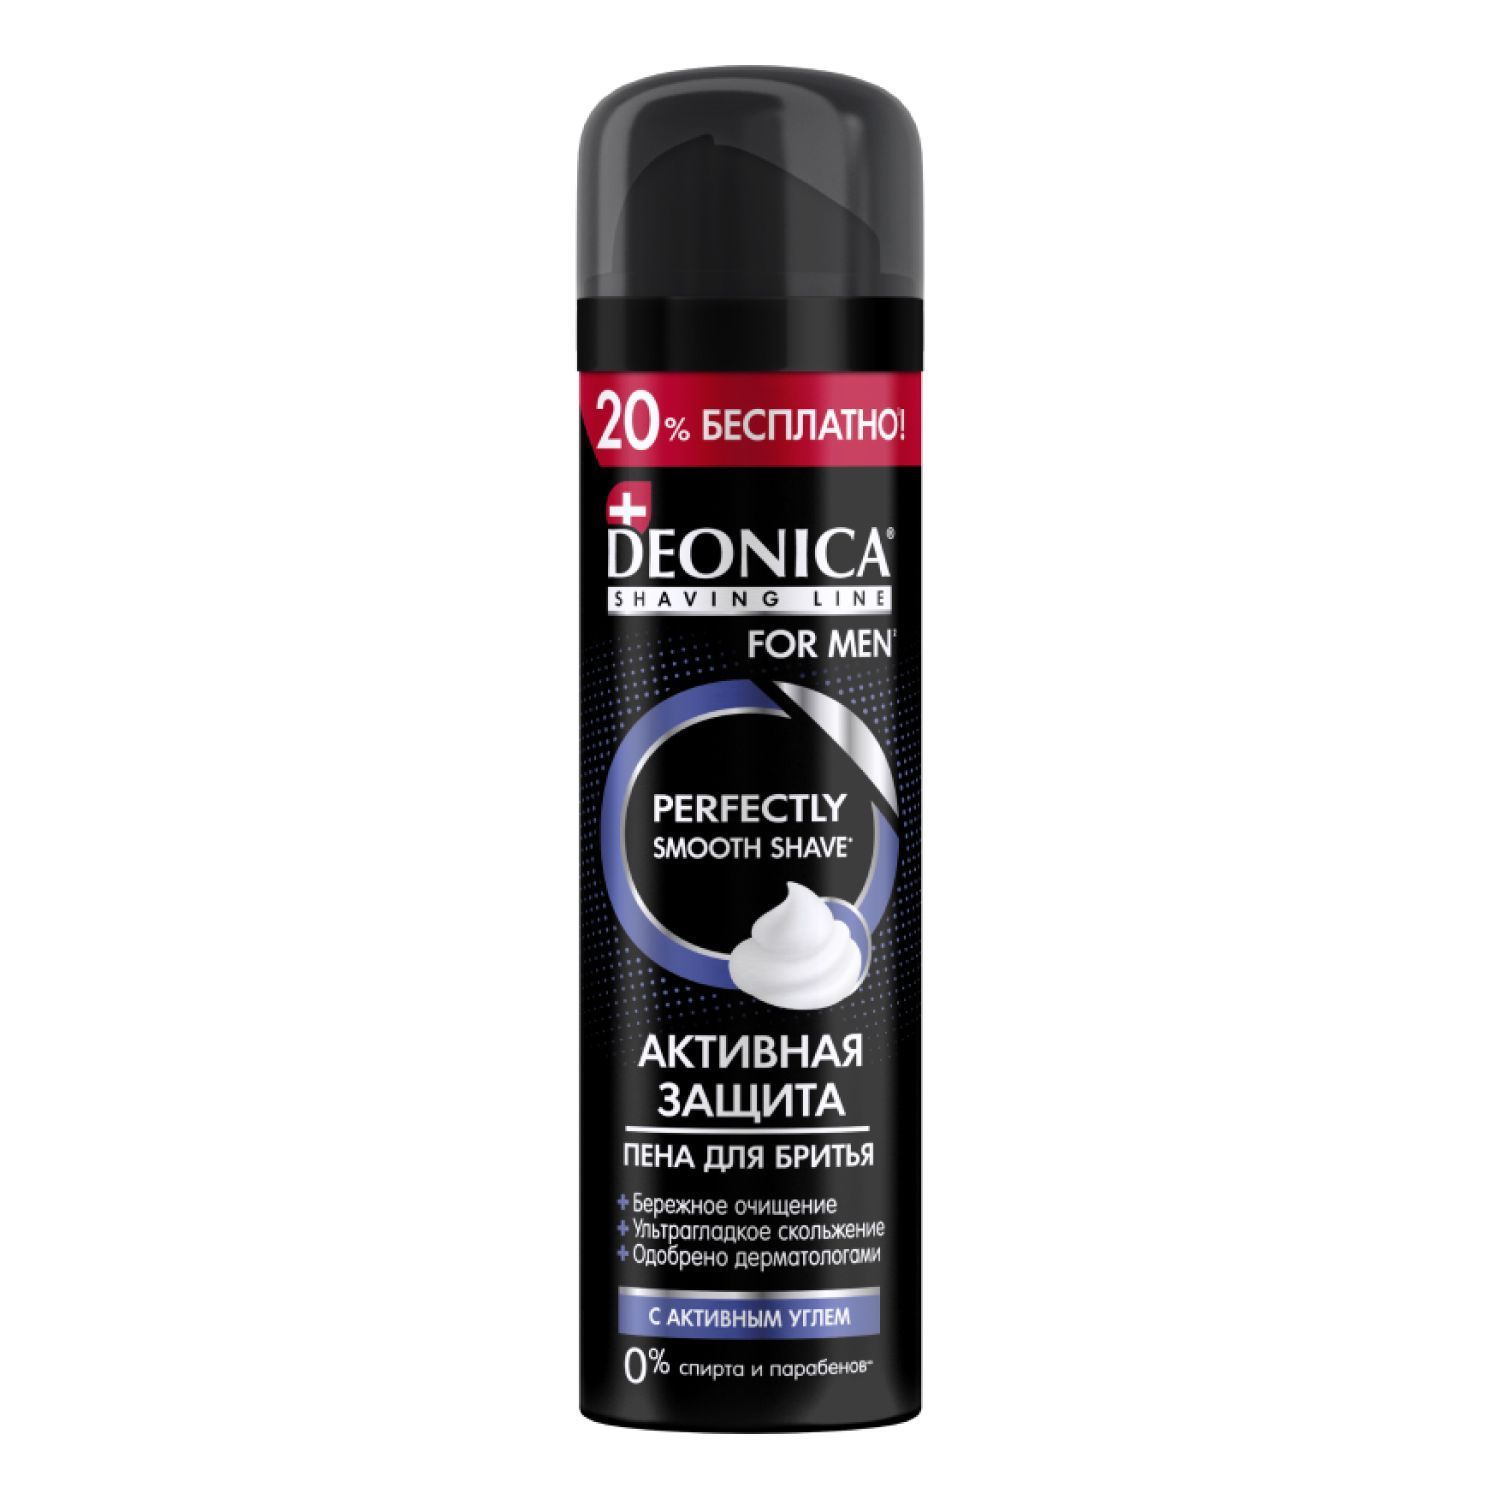 Пена для бритья Deonica с чёрным углём 240 мл гель для бритья deonica for men максимальная защита 200 мл